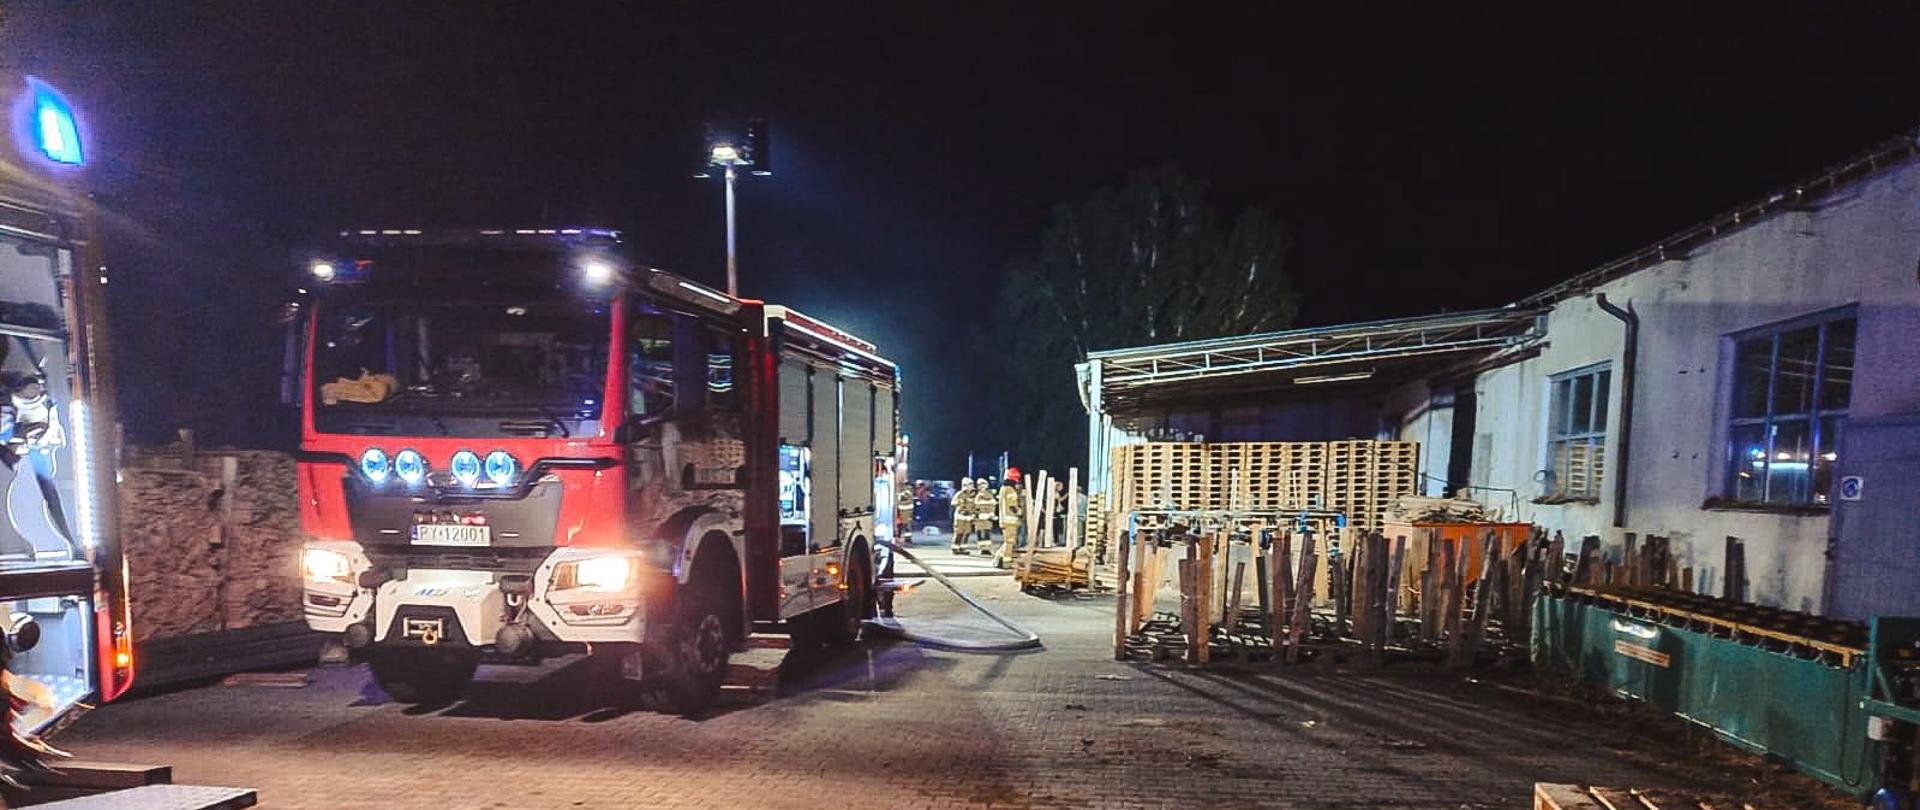 Samochody strażackie stojące na terenie zakładu. Zdjęcie wykonane w porze nocnej.